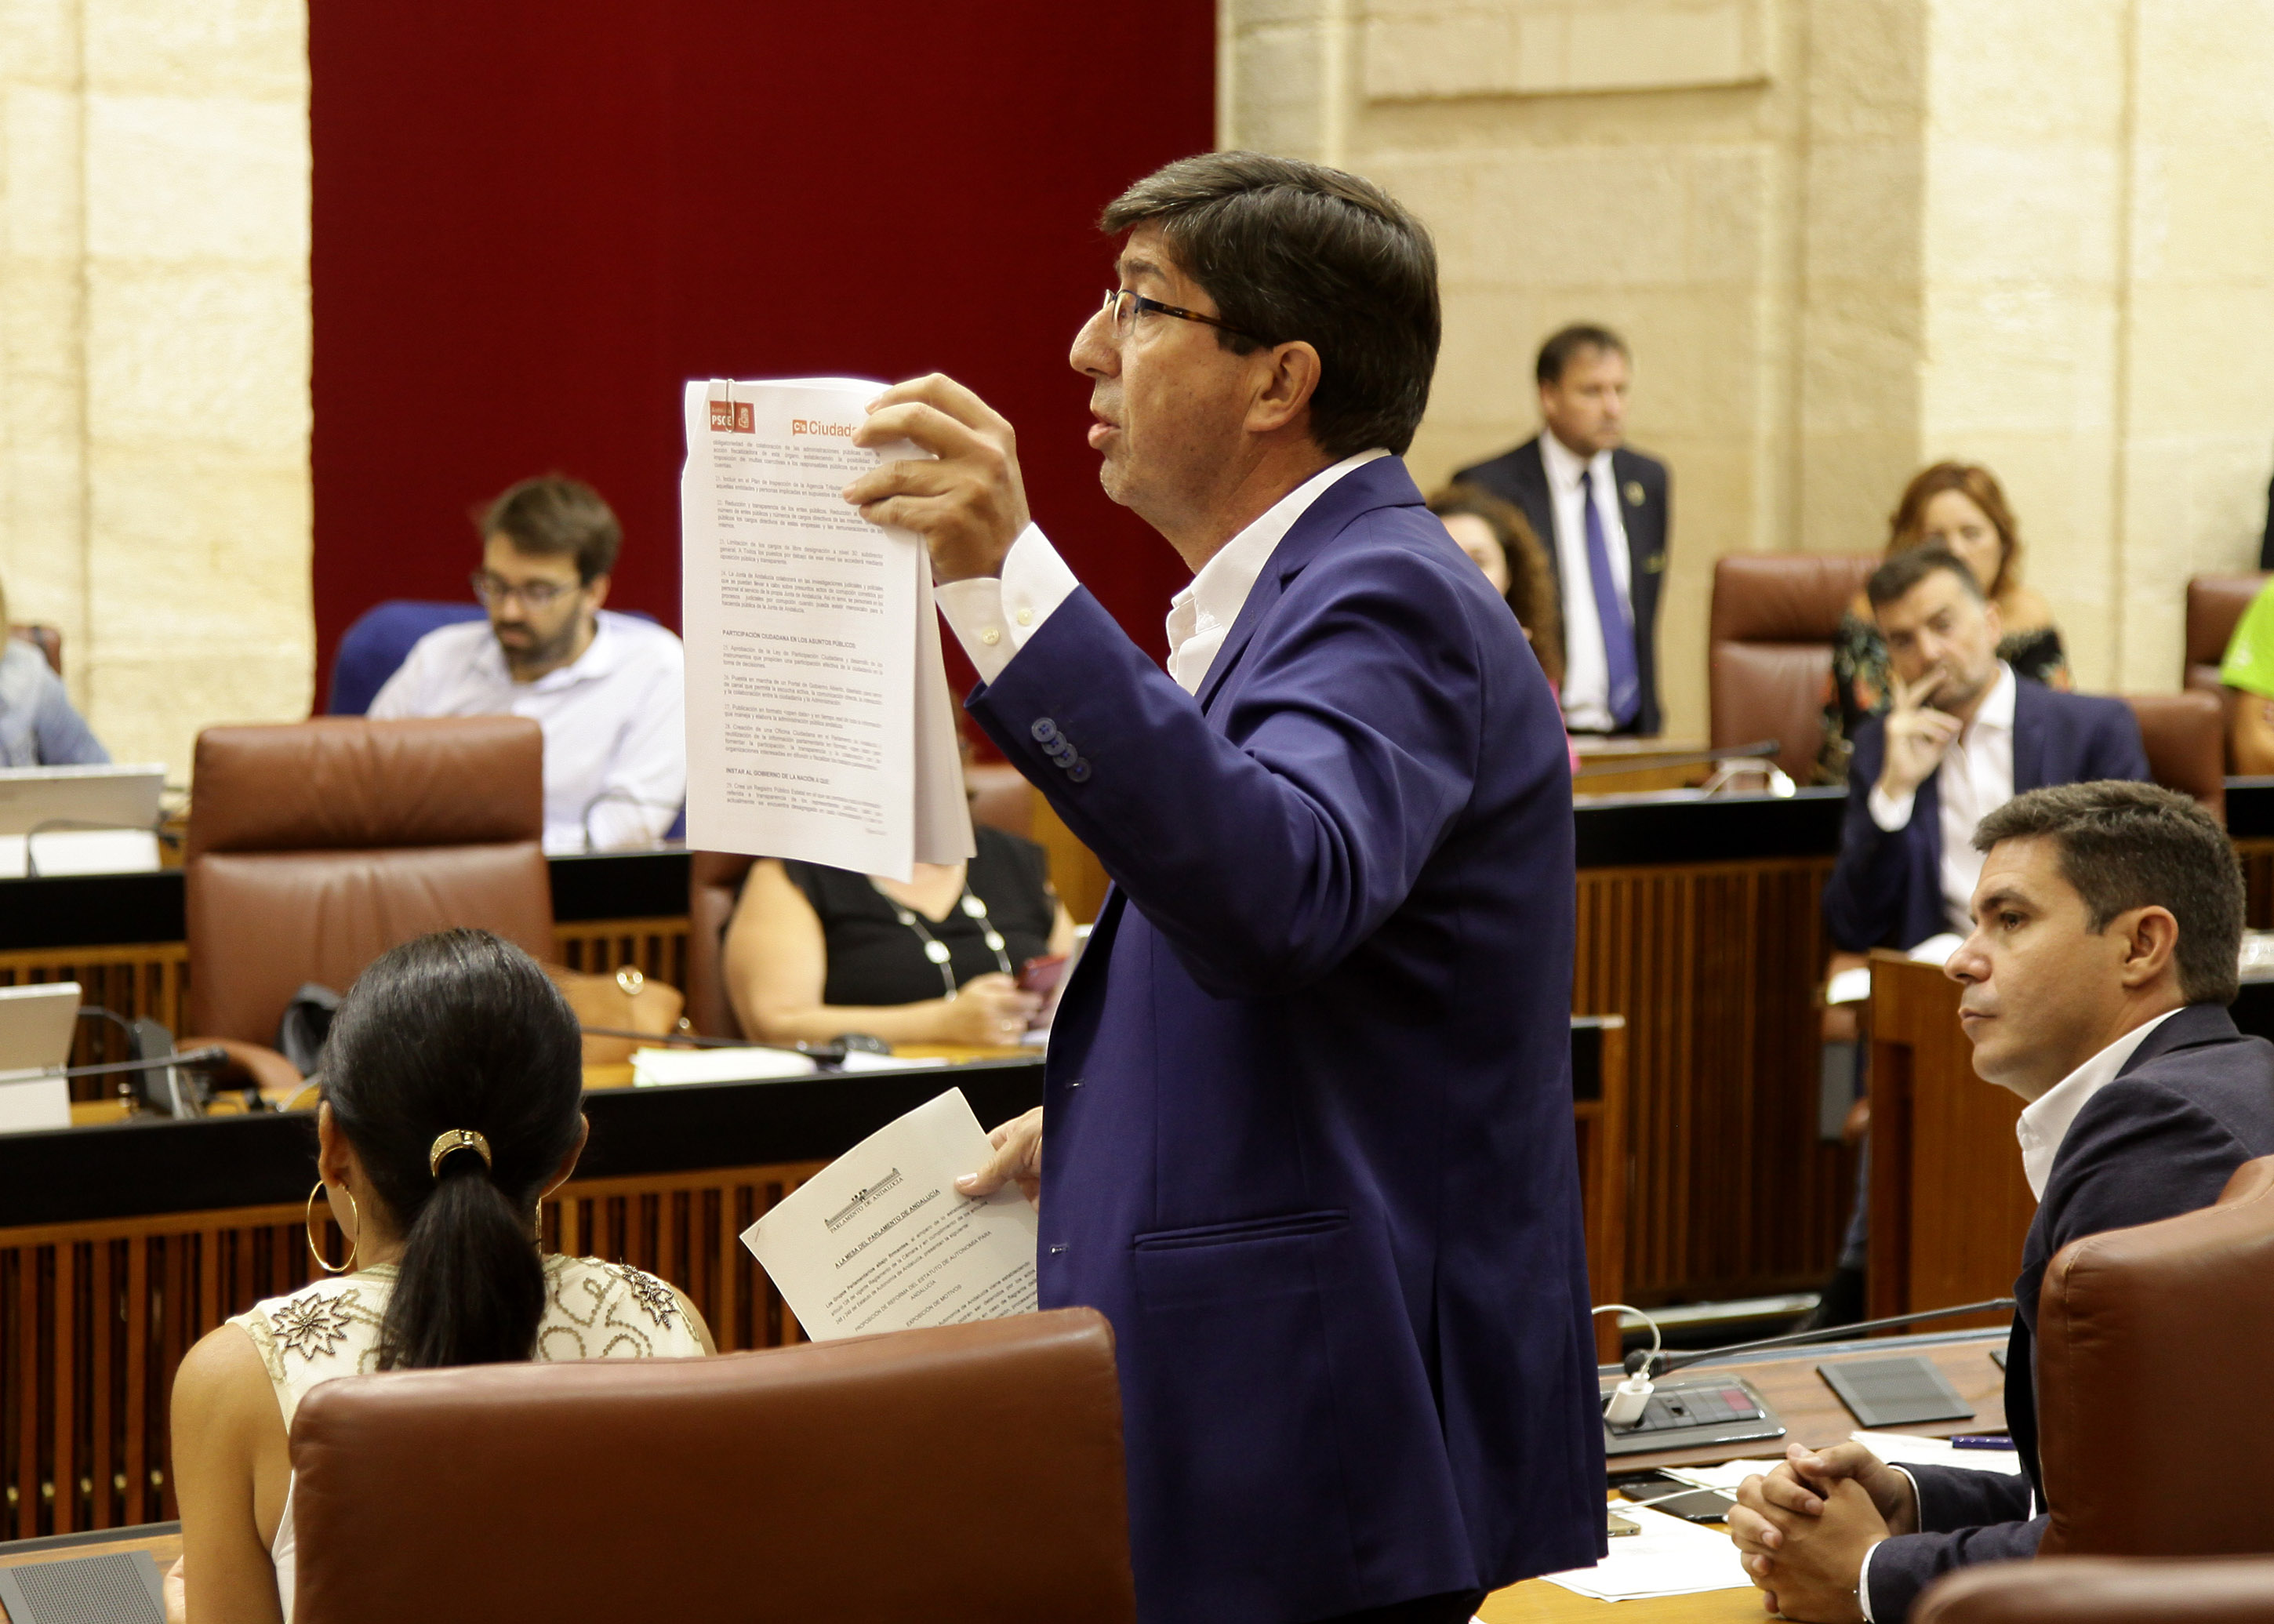  Juan Marn, portavoz del Grupo Ciudadanos, se dirige a la presidenta de la Junta de Andaluca